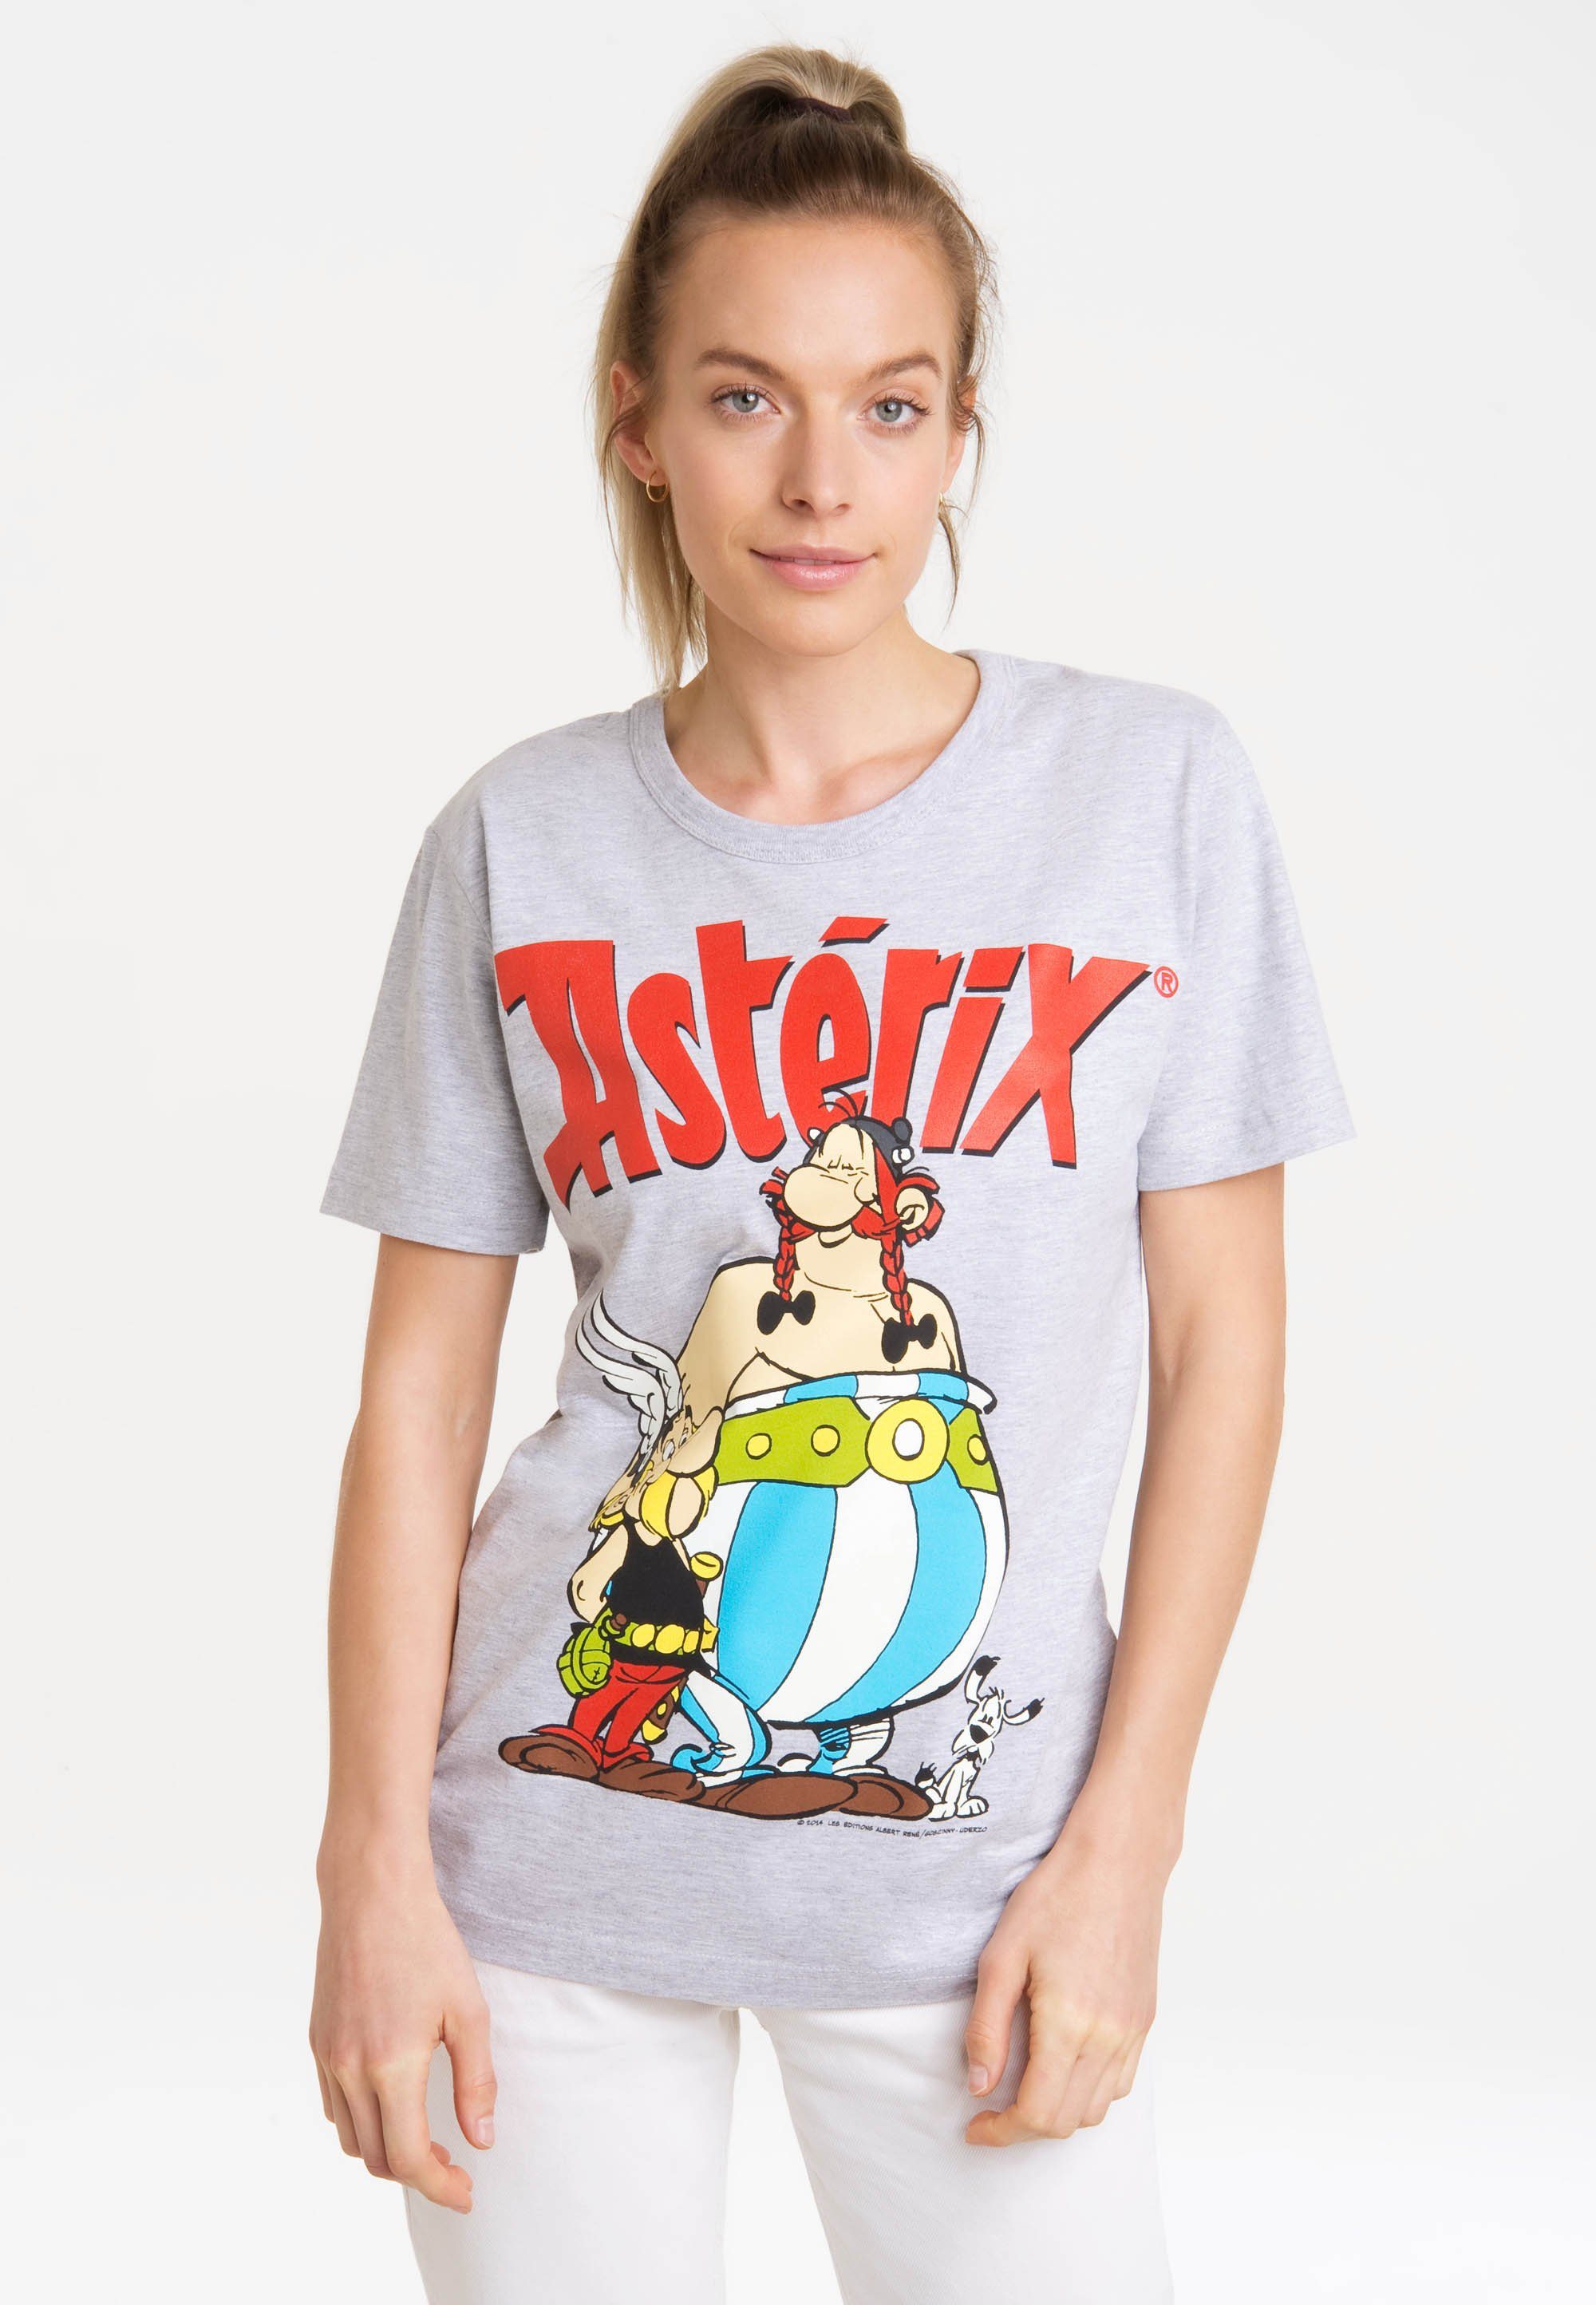 mit der lizenziertem T-Shirt Gallier Asterix Print & LOGOSHIRT - Asterix Obelix